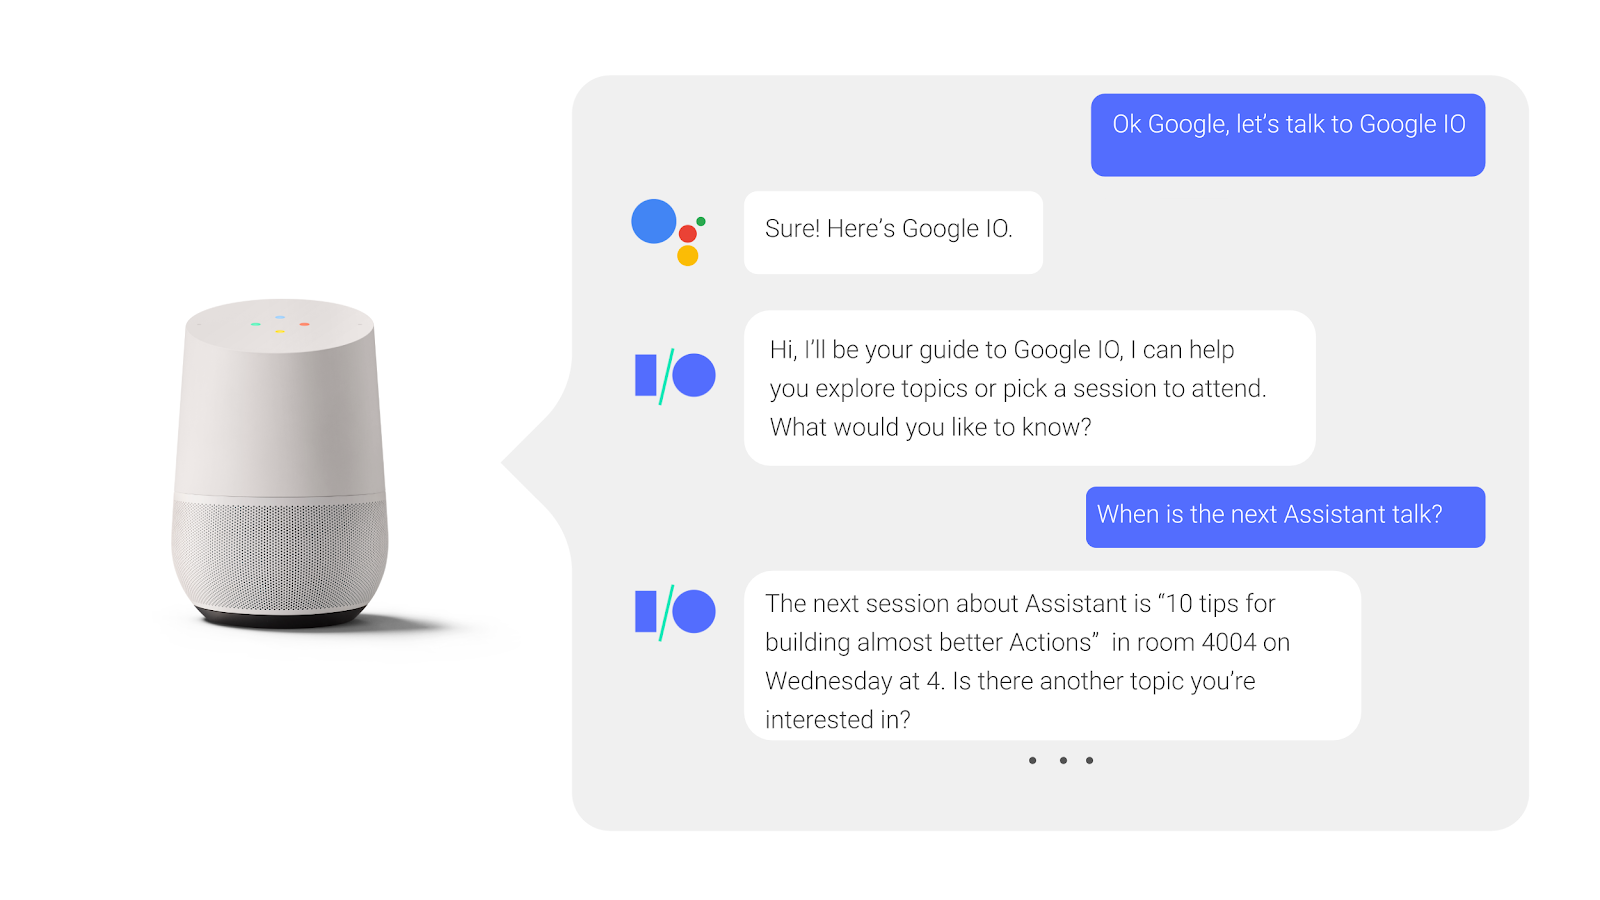 ในการสนทนาโต้ตอบไปมากับ Google Assistant ผู้ใช้ถามและรับคำตอบเมื่อมีเซสชันการประชุมเกิดขึ้น